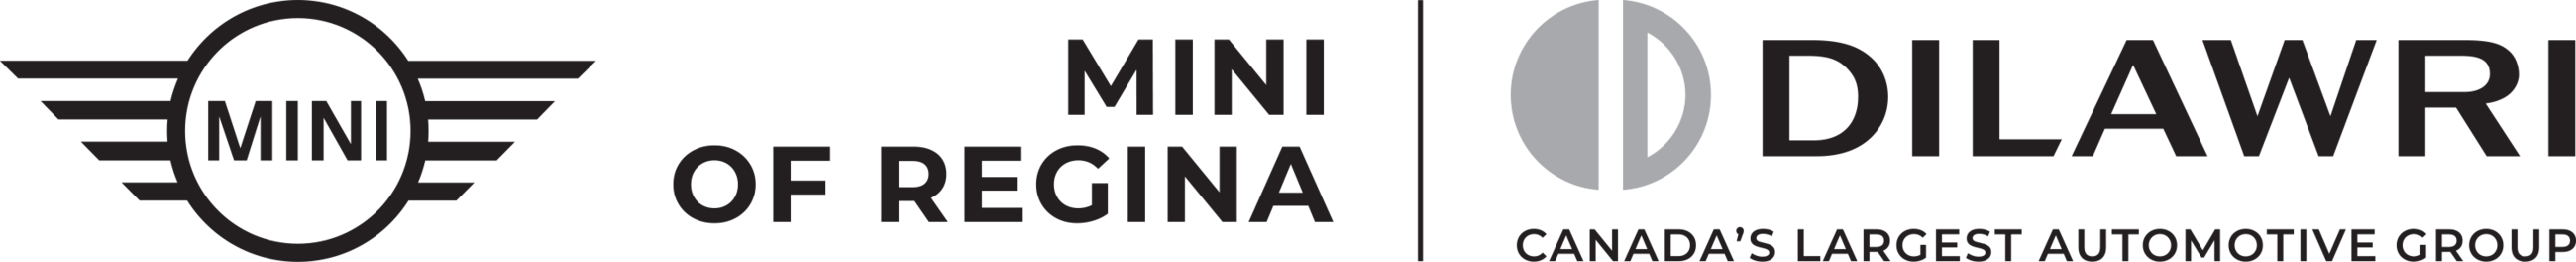 MINI of Regina Logo